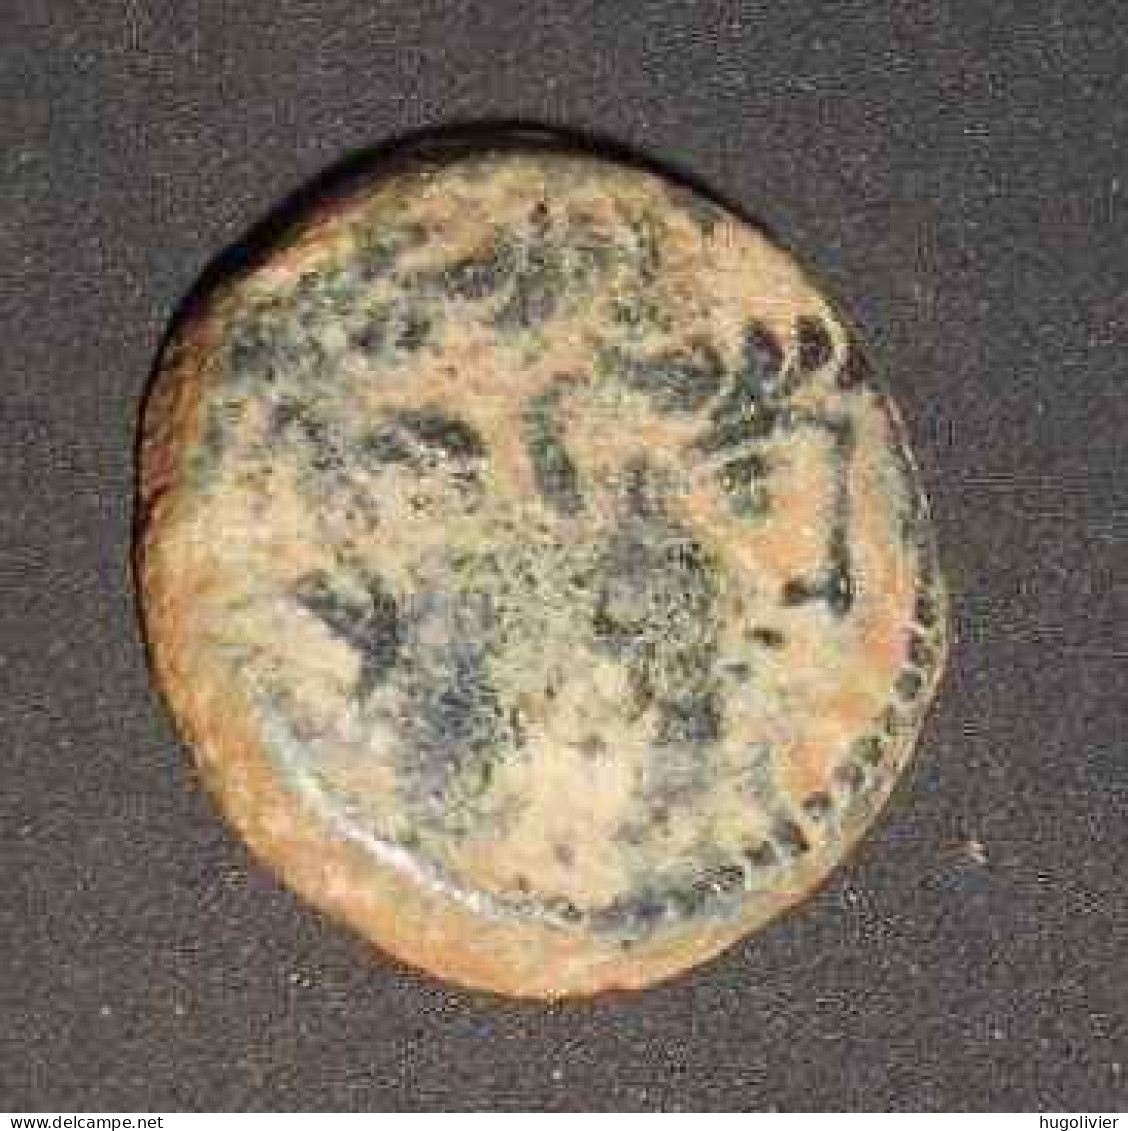 Ancienne Monnaie Séleucide Antiochos IX Syrie -114 à -95 AJC Poids: 6,06 Gr Diamètre: 1,8 Cm - Oriental